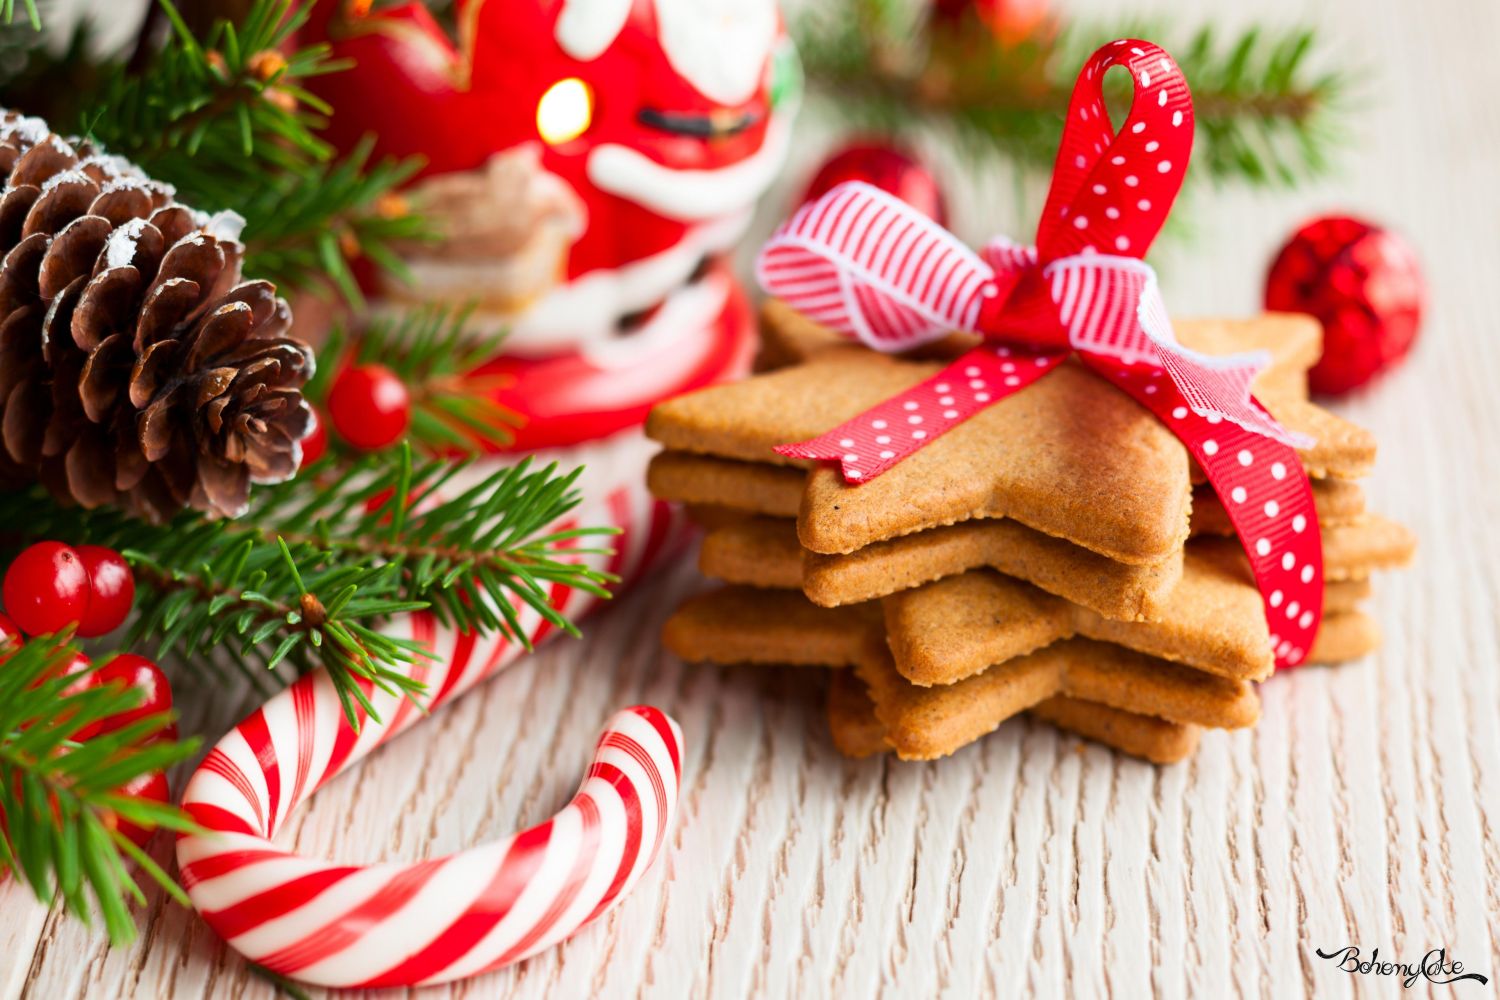 Biscotti Natalizi Segnaposto.Le Migliori Ricette Di Biscotti Da Regalare A Natale Bohemycake